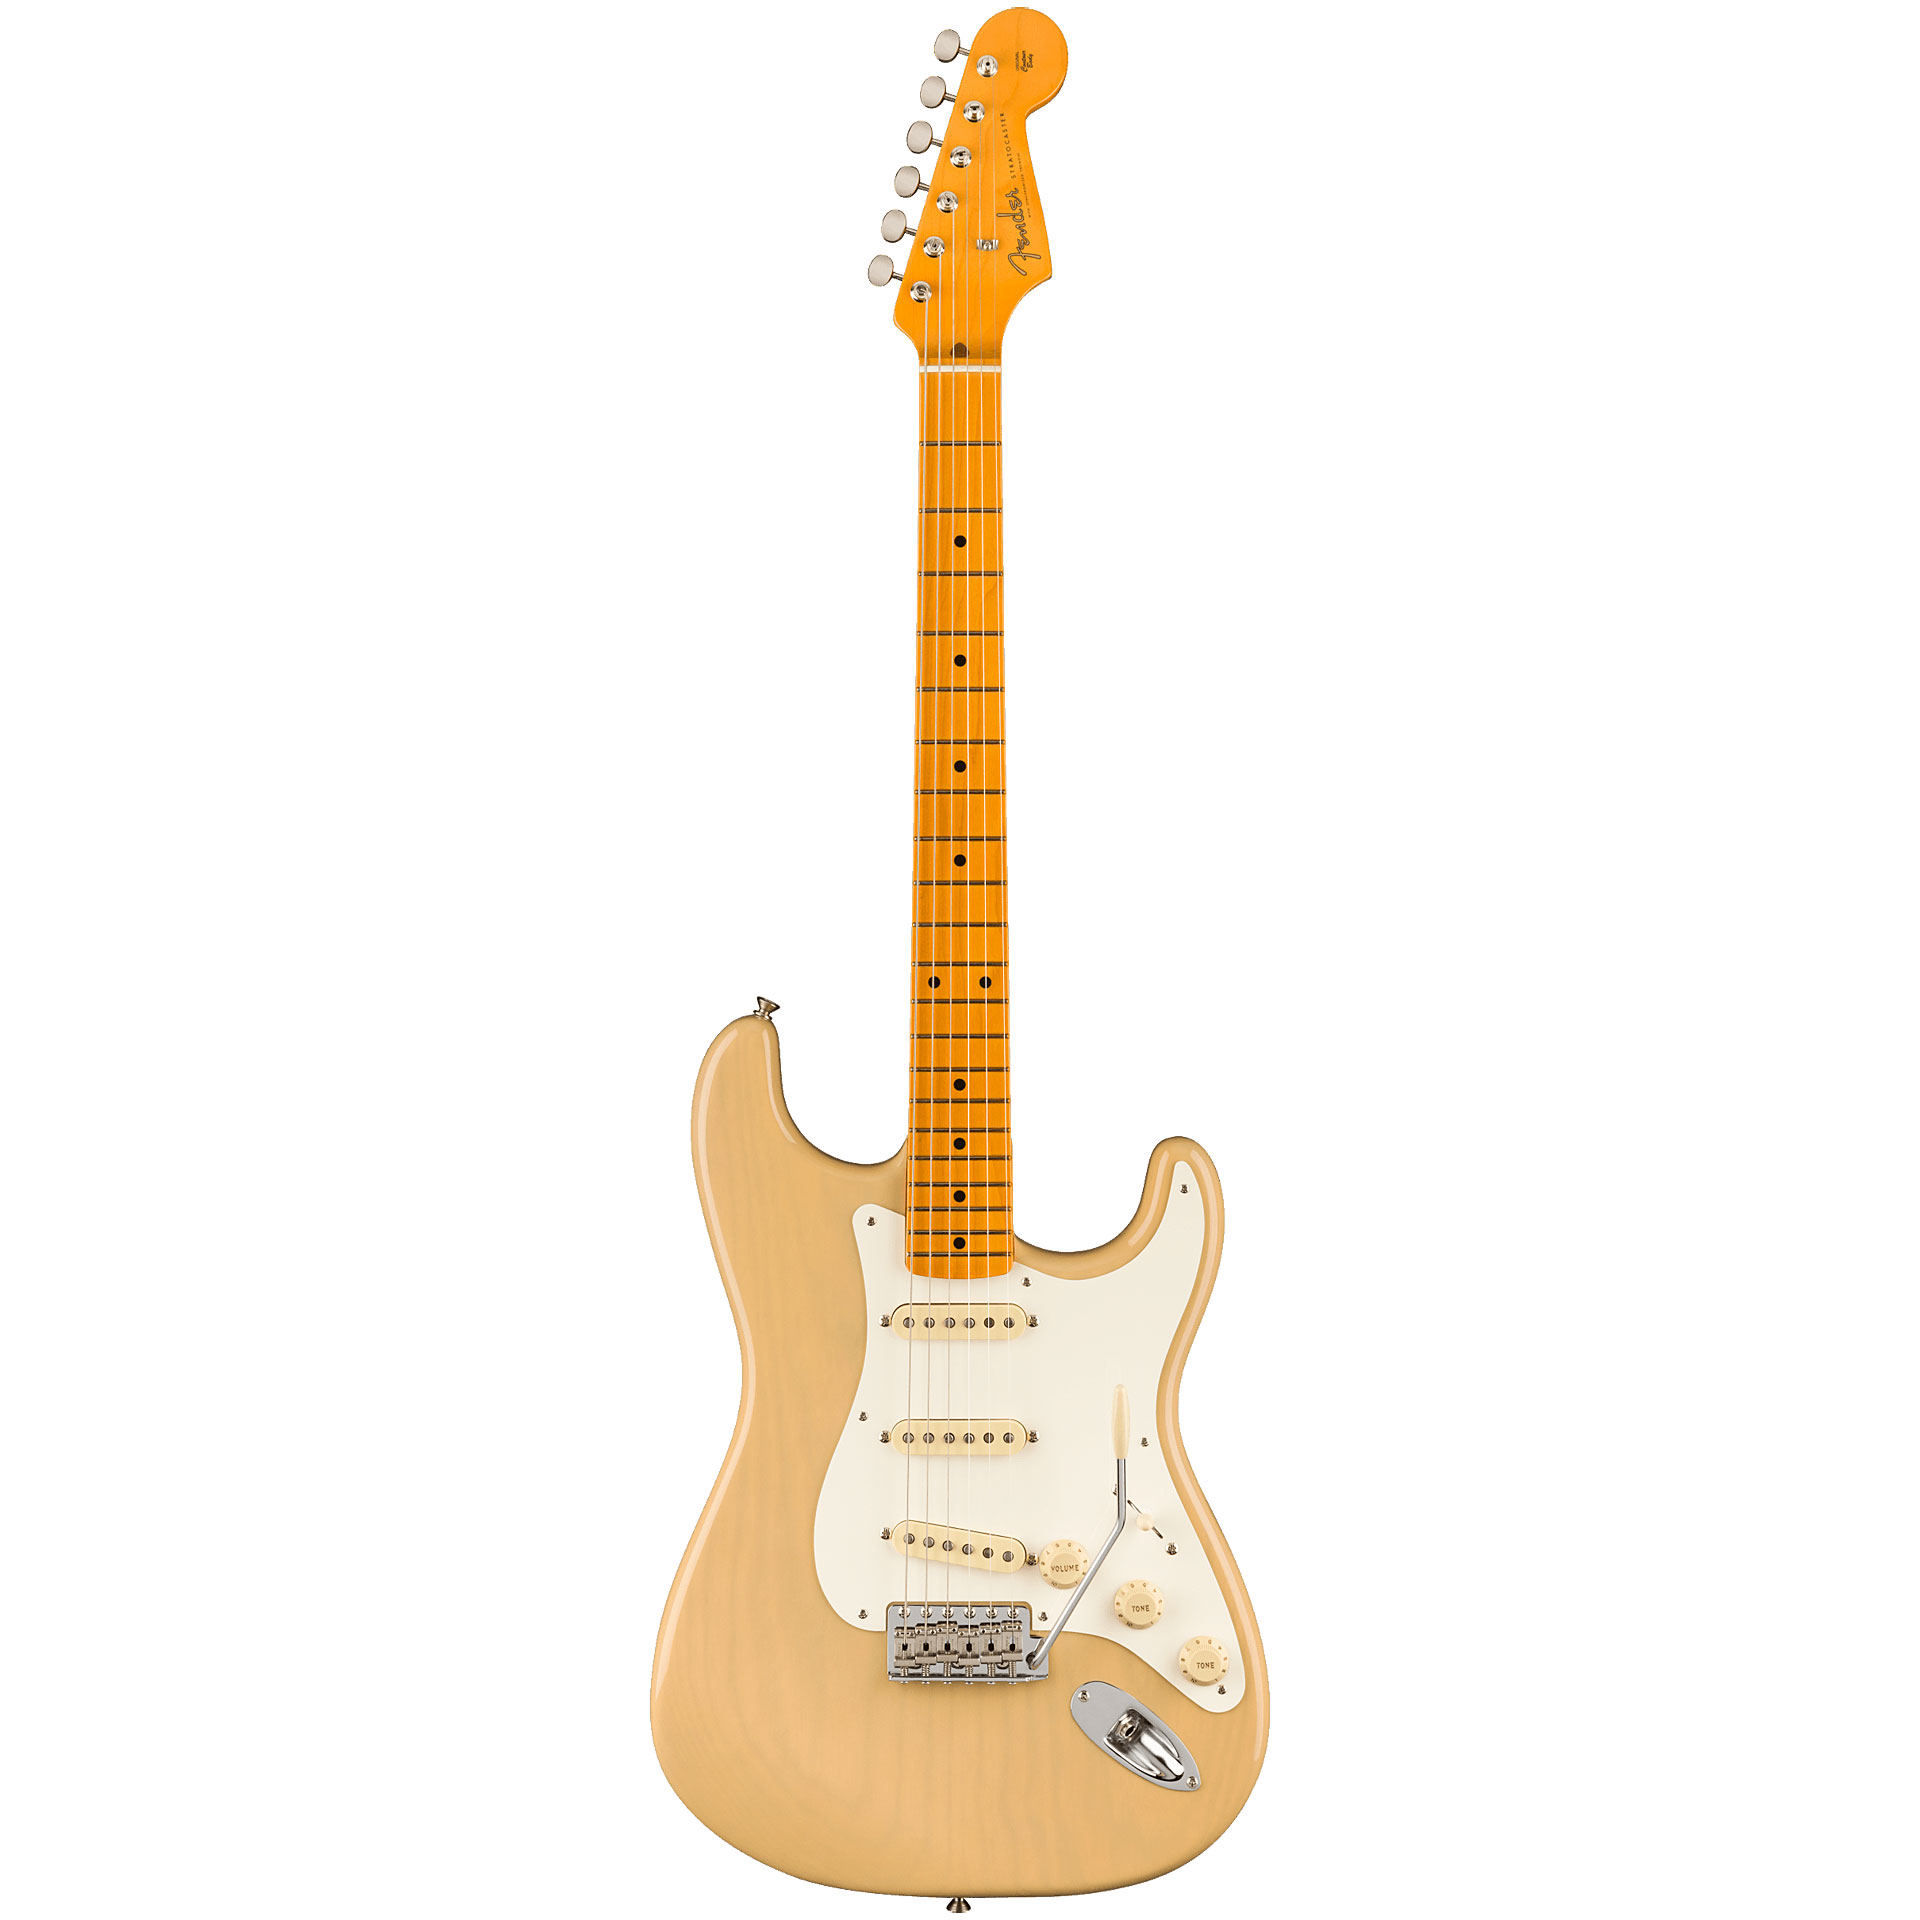 Fender American Vintage II 1957 Stratocaster - Vintage Blonde 